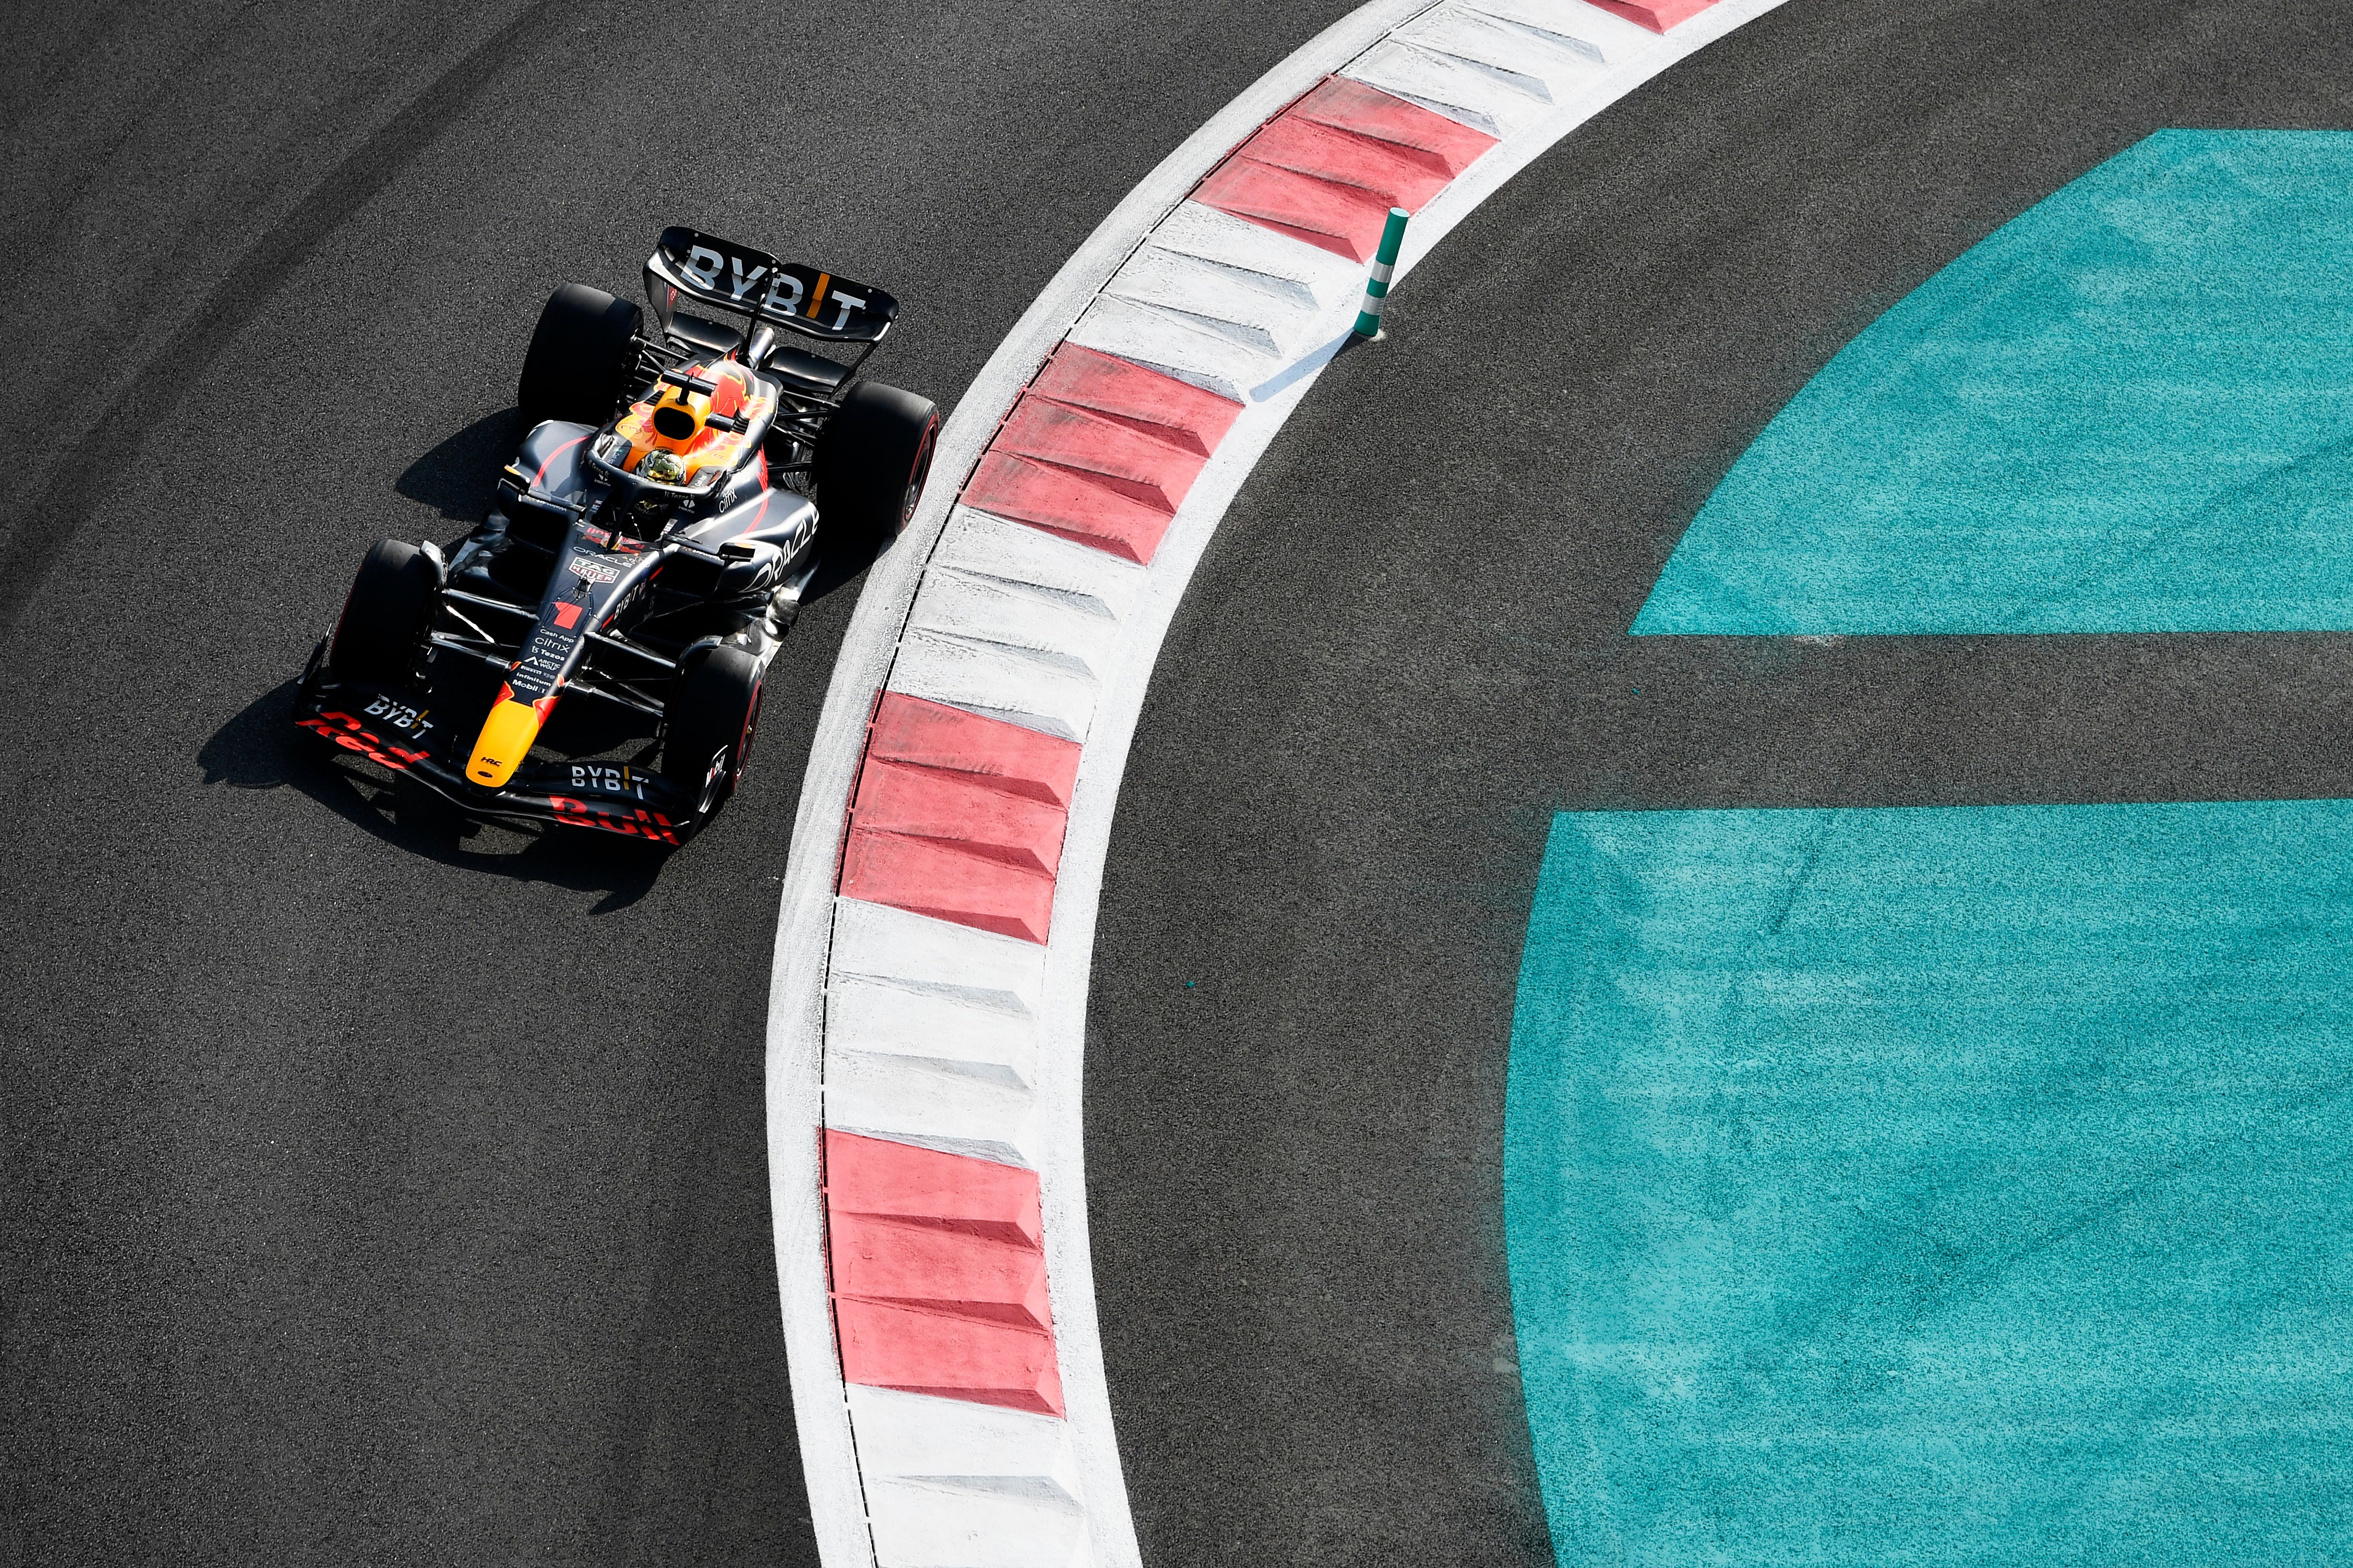 Max Verstappen was quickest in Abu Dhabi qualifying